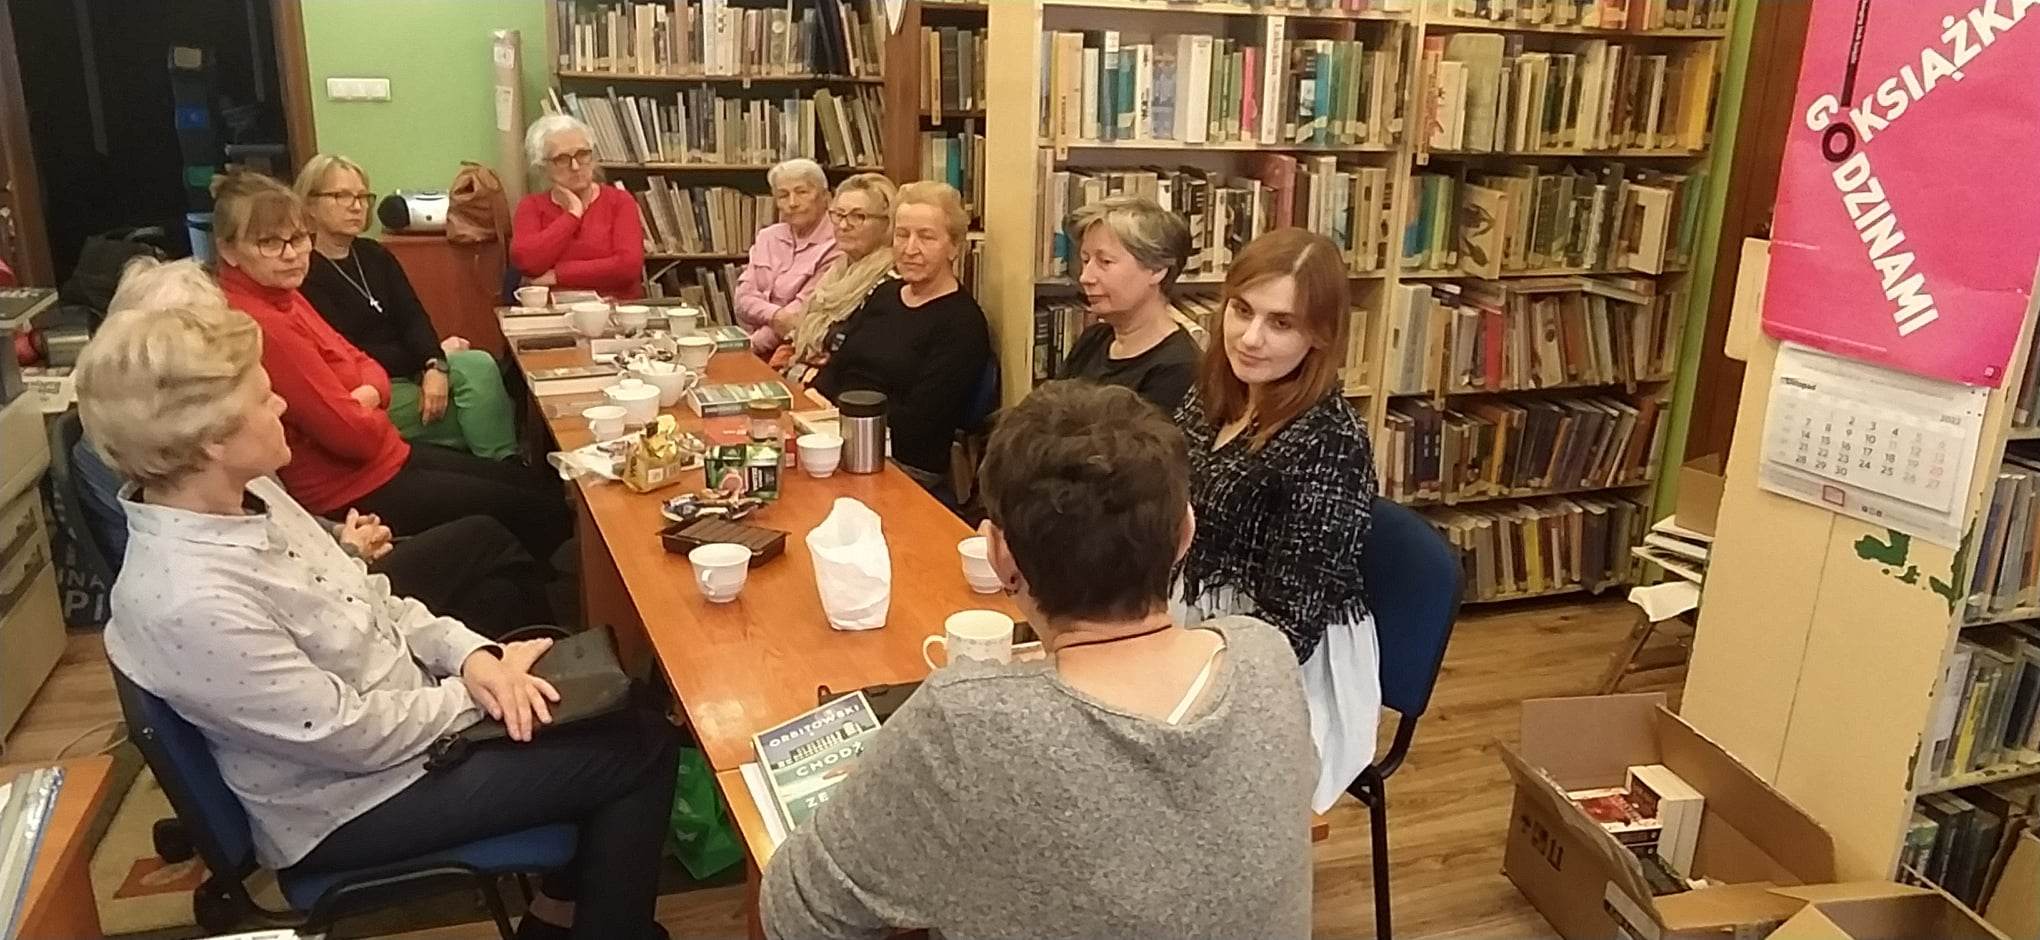 Jedenaście kobiet siedzi przy stole, na którym stoją filiżanki z kawą, ciasteczka oraz leżą książki.